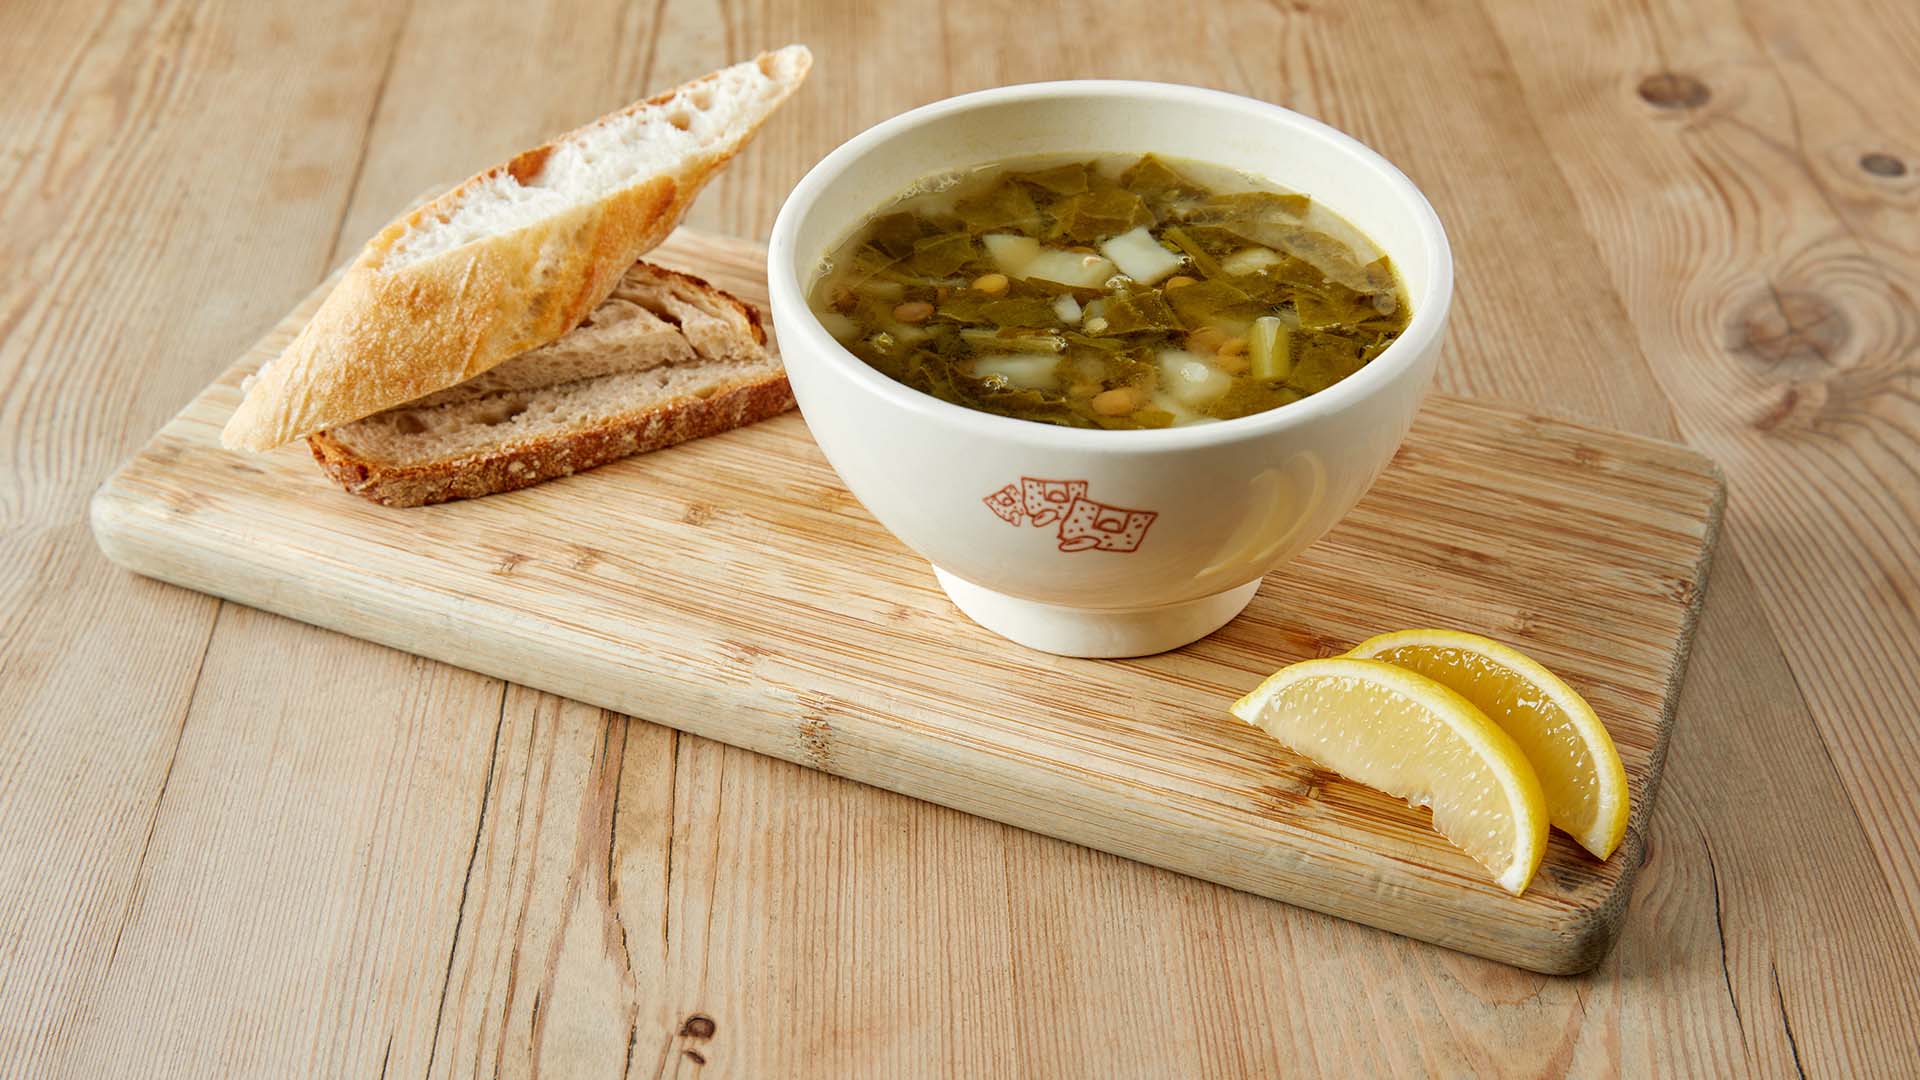 Le Pain Quotidien Vegan Lentil & Lemon Soup